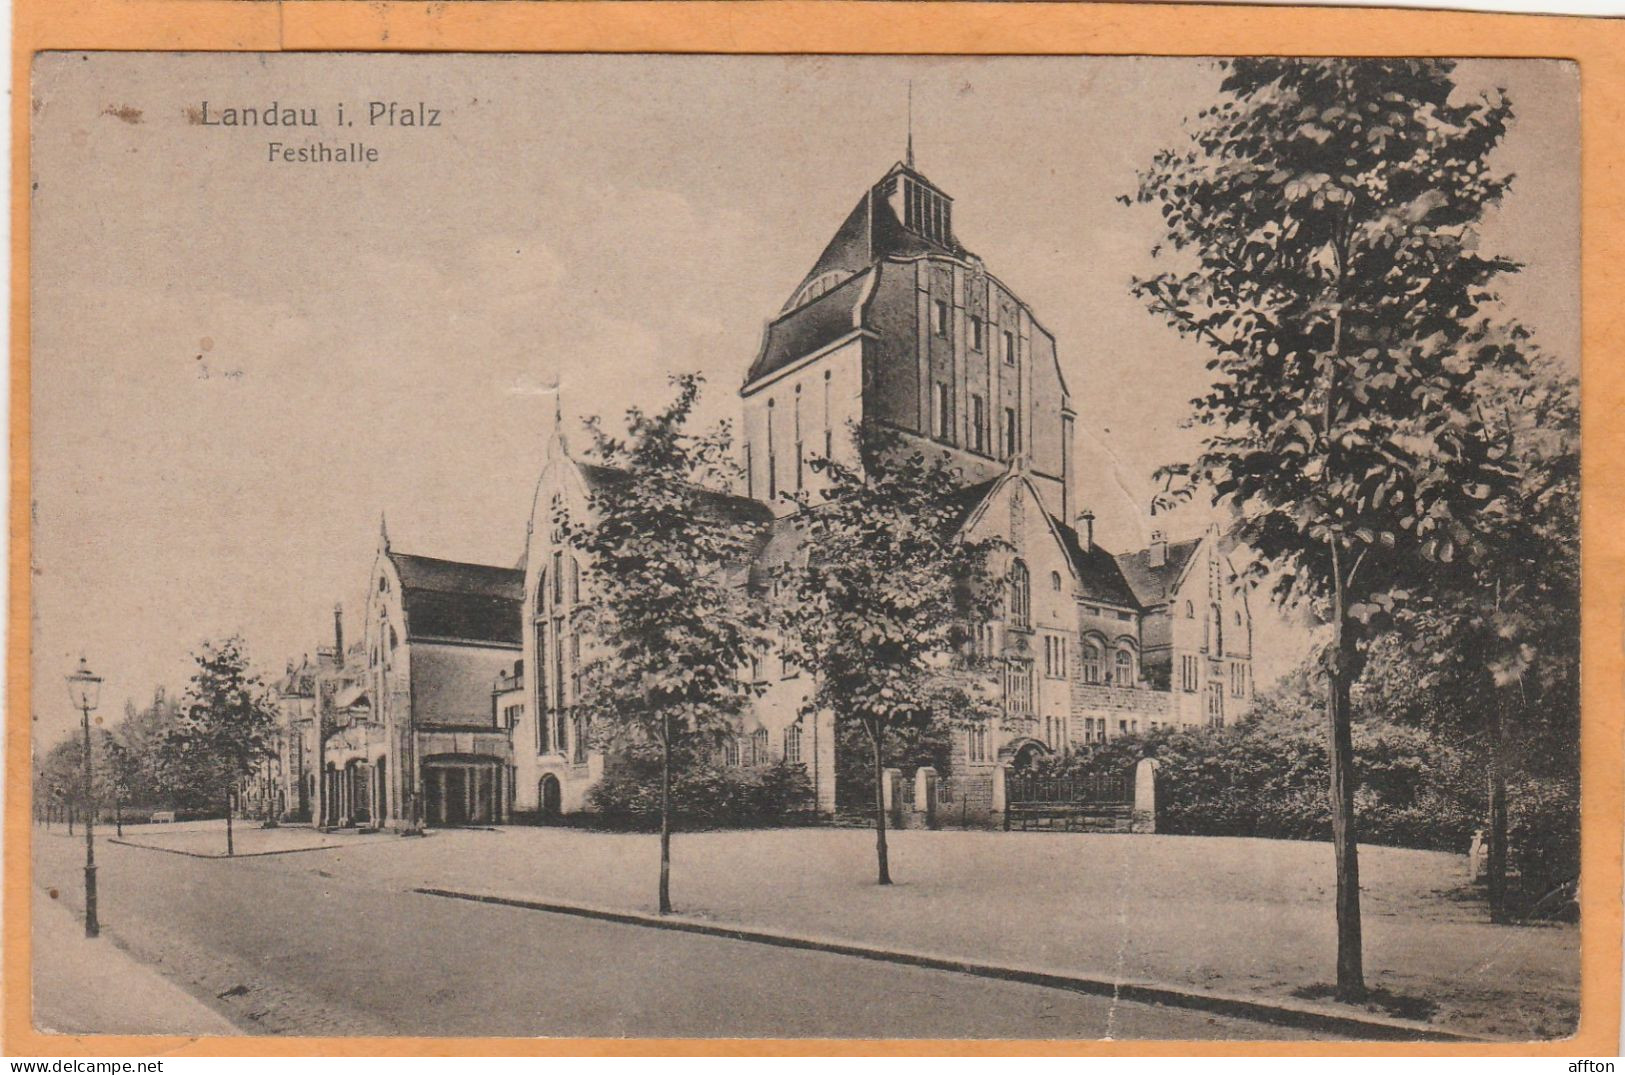 Landau I Pfalz Germany 1921 Postcard - Landau